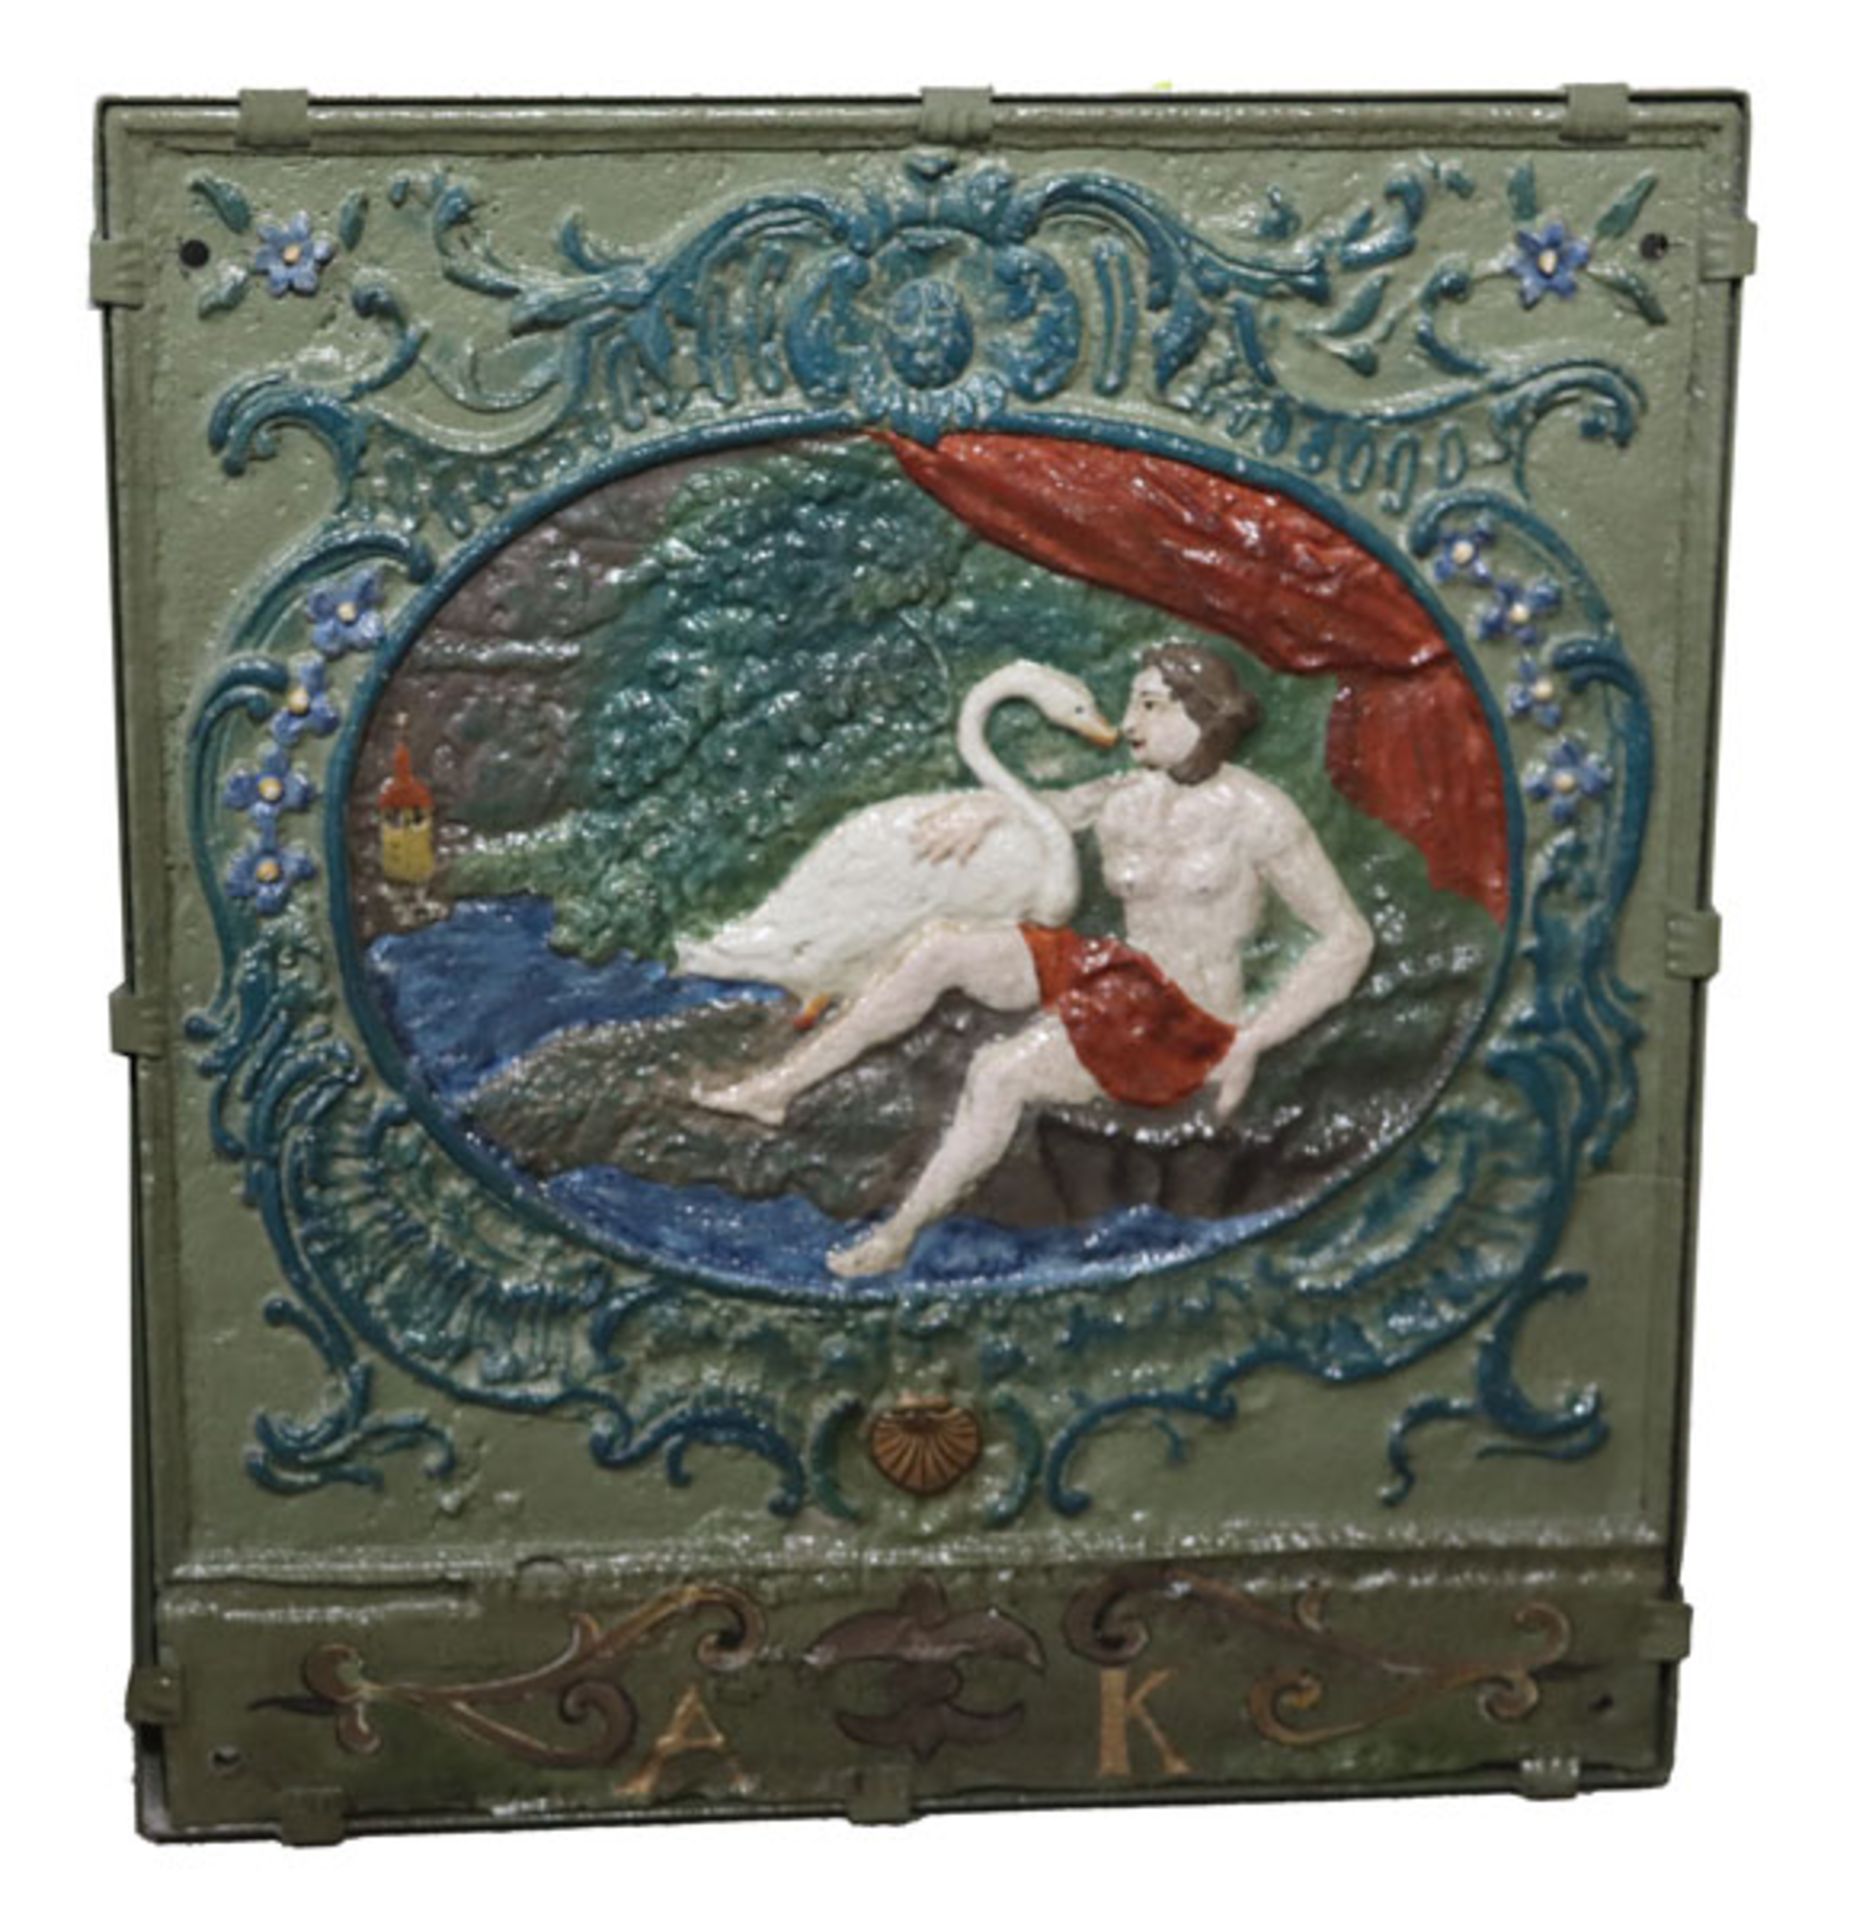 Ofenplatte mit Reliefdekor 'Leda mit Schwan', farbig bemalt, 83 cm x 73 cm, kein Versand, Abholung